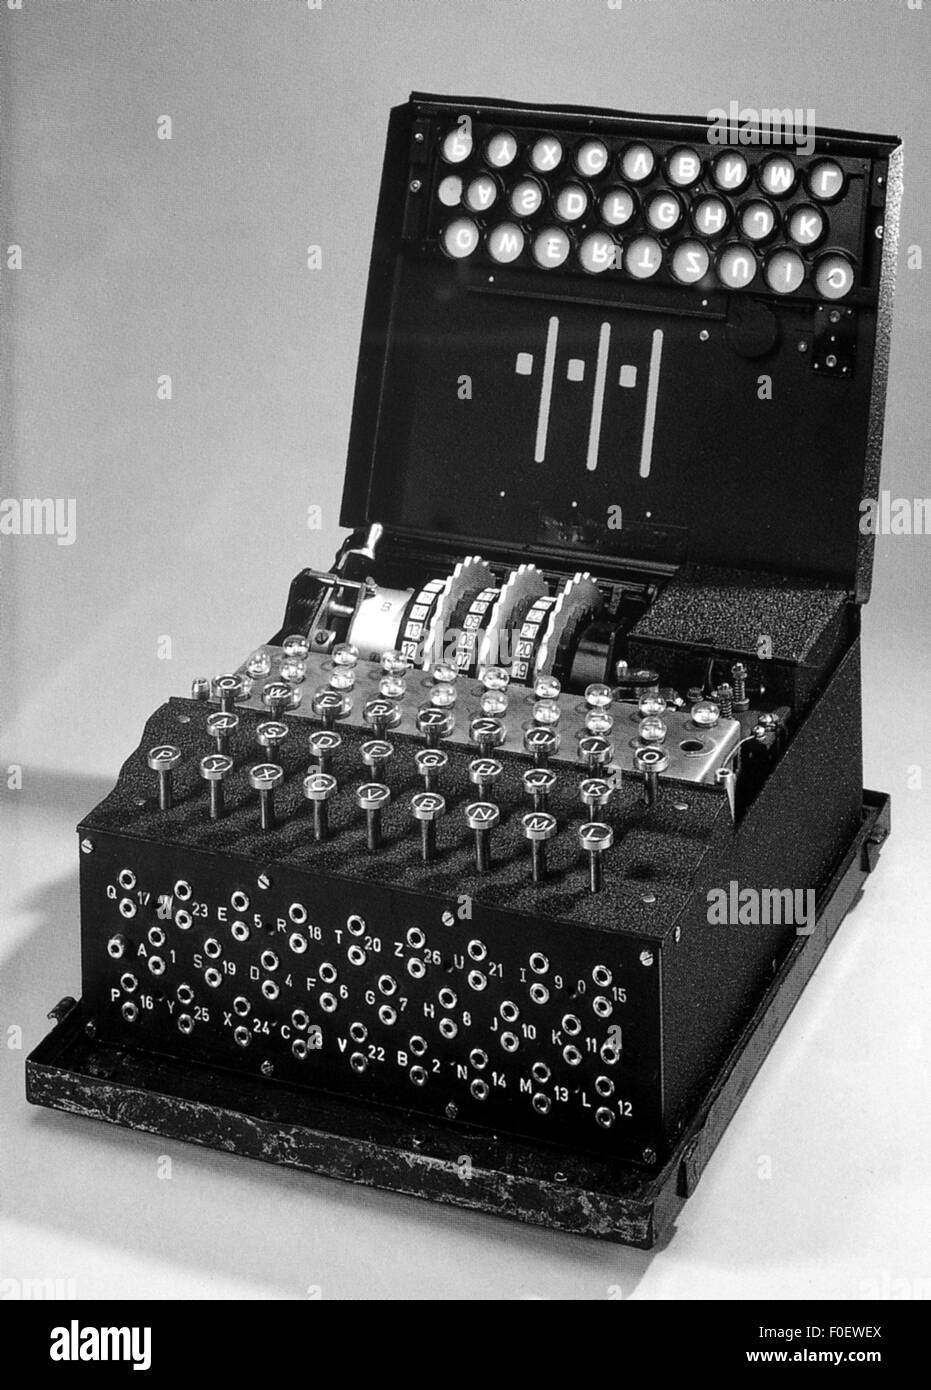 Spionage, deutsche 'Enigma'-Maschine, zur Ver- und Entschlüsselung von Geheimnachrichten, in Dienst 1923-1945, Additional-Rights-Clearences-nicht verfügbar Stockfoto